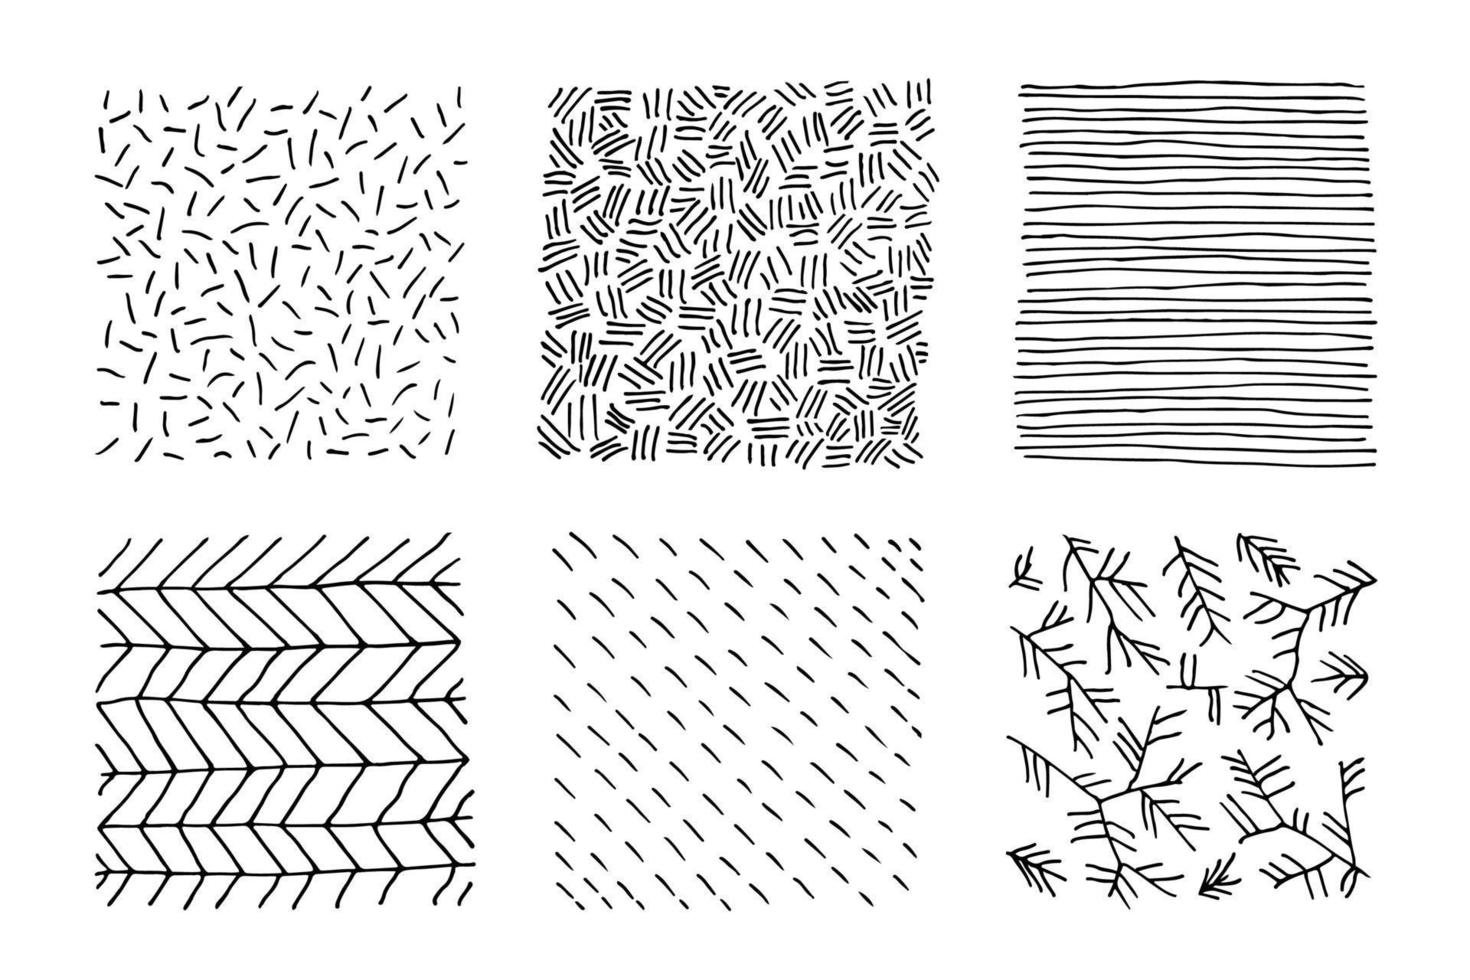 uppsättning handritade svarta och vita texturer med prickar, cirklar, halvcirklar, linjer och streckade linjer. handritade former av doodles. fläckar, droppar, kurvor, linjer. vektor